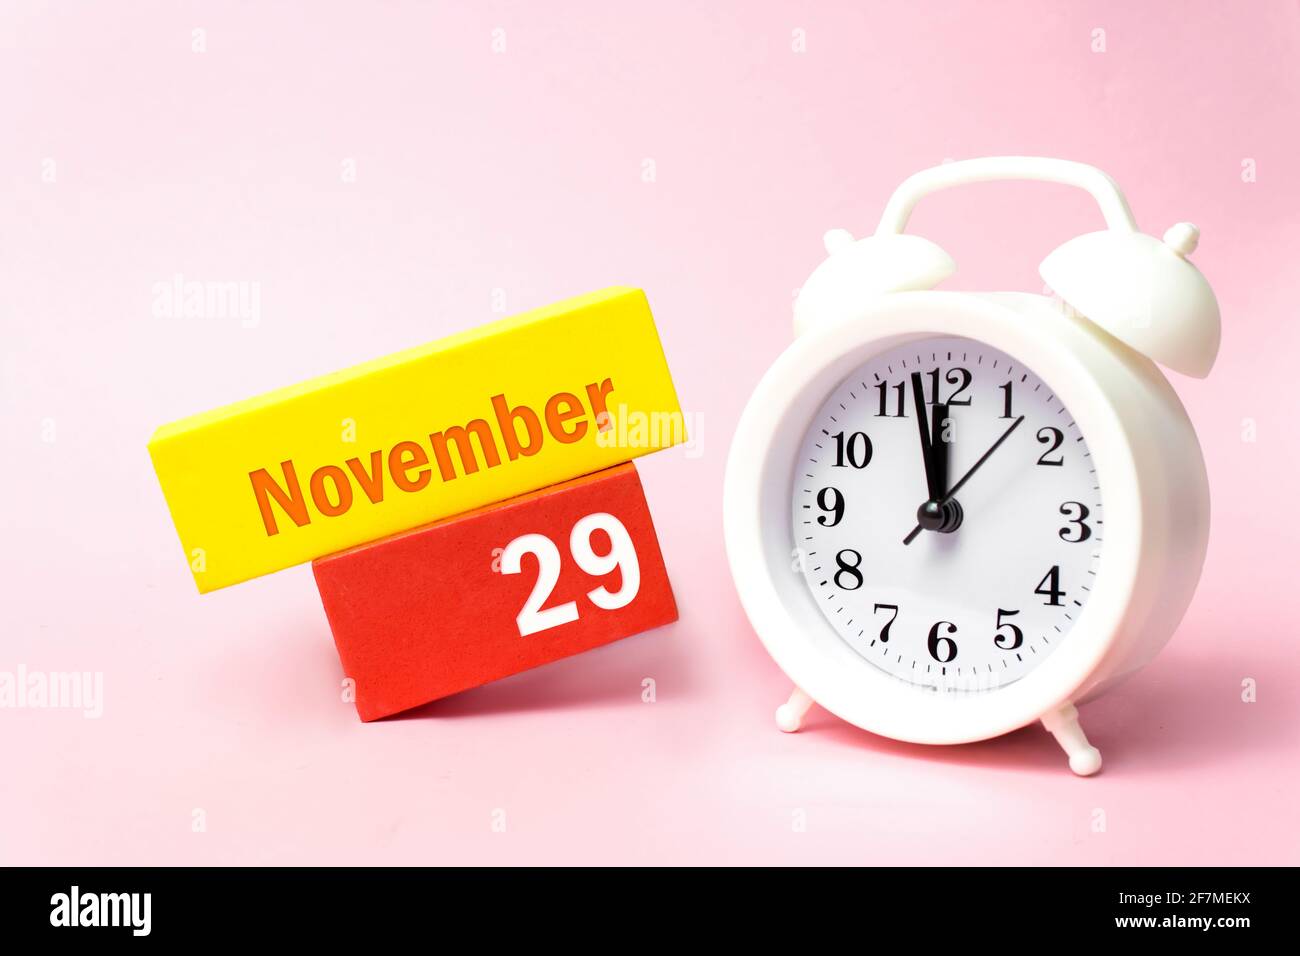 November. Tag 29 des Monats, Kalenderdatum. Weißer Wecker auf pastellrosa Hintergrund. Herbst Monat, Tag des Jahres Konzept Stockfoto